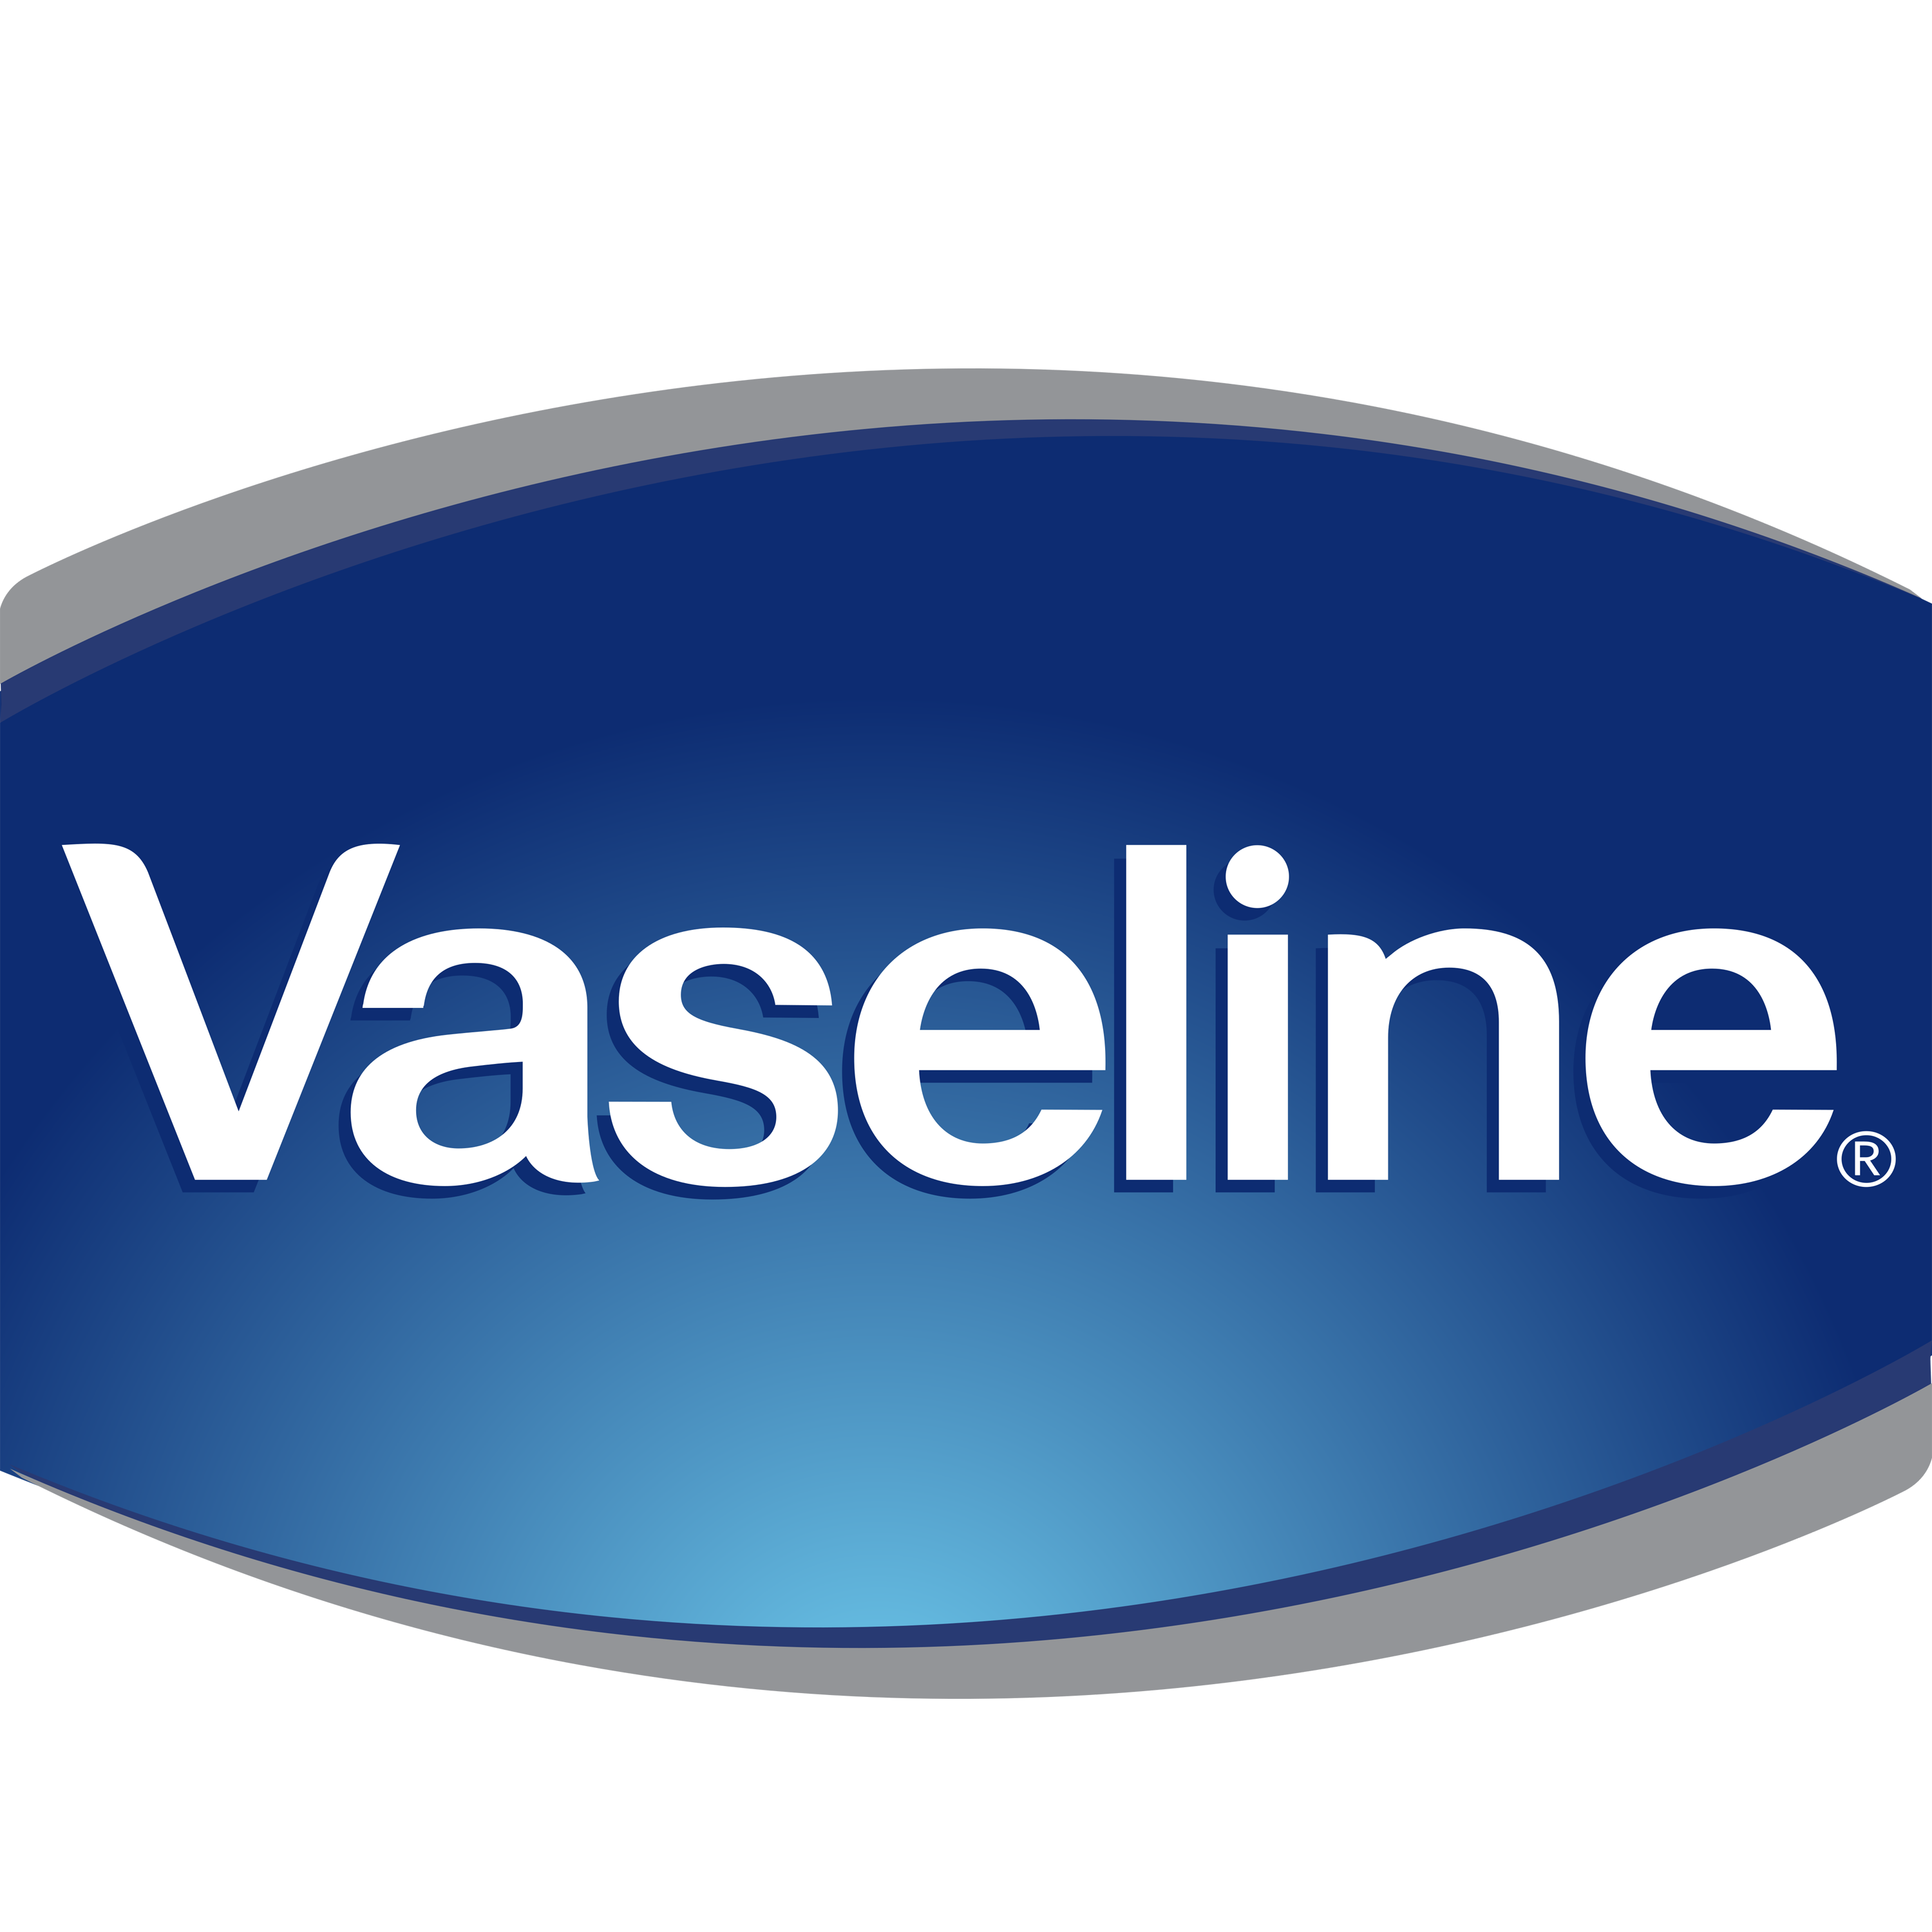 Vaseline Logo Transparent Image